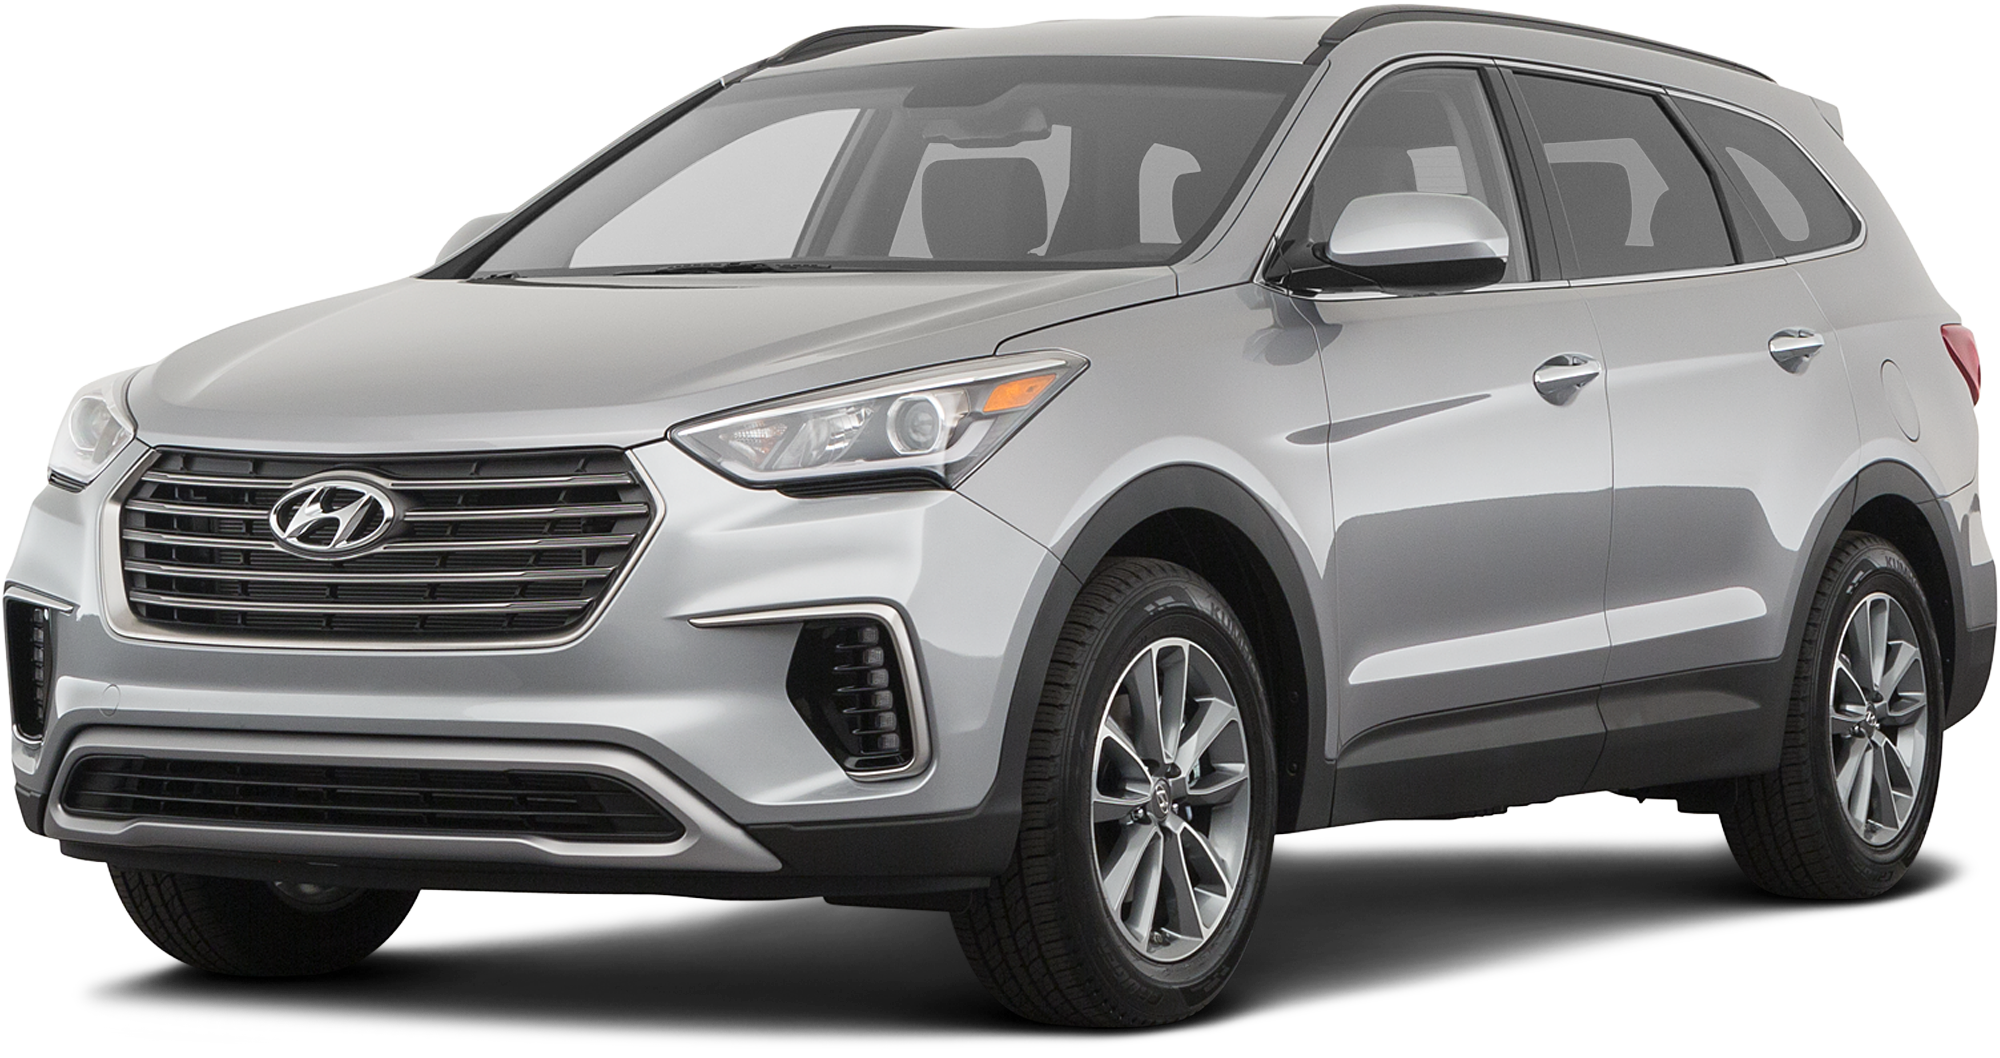 Hyundai Santa Fe Rebates And Incentives